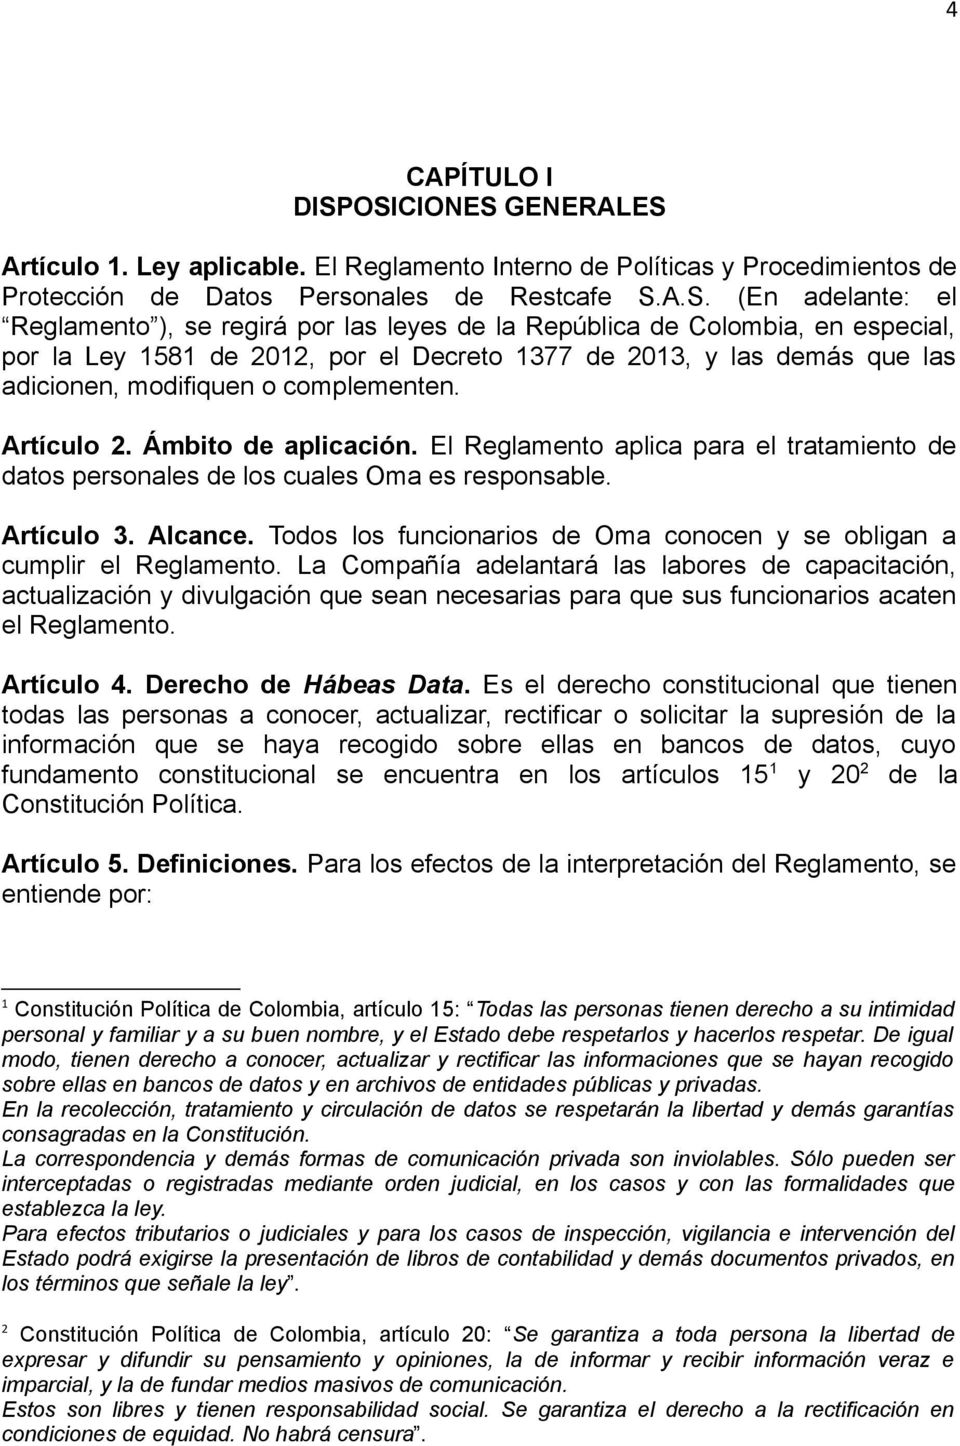 las leyes de la República de Colombia, en especial, por la Ley 1581 de 2012, por el Decreto 1377 de 2013, y las demás que las adicionen, modifiquen o complementen. Artículo 2. Ámbito de aplicación.